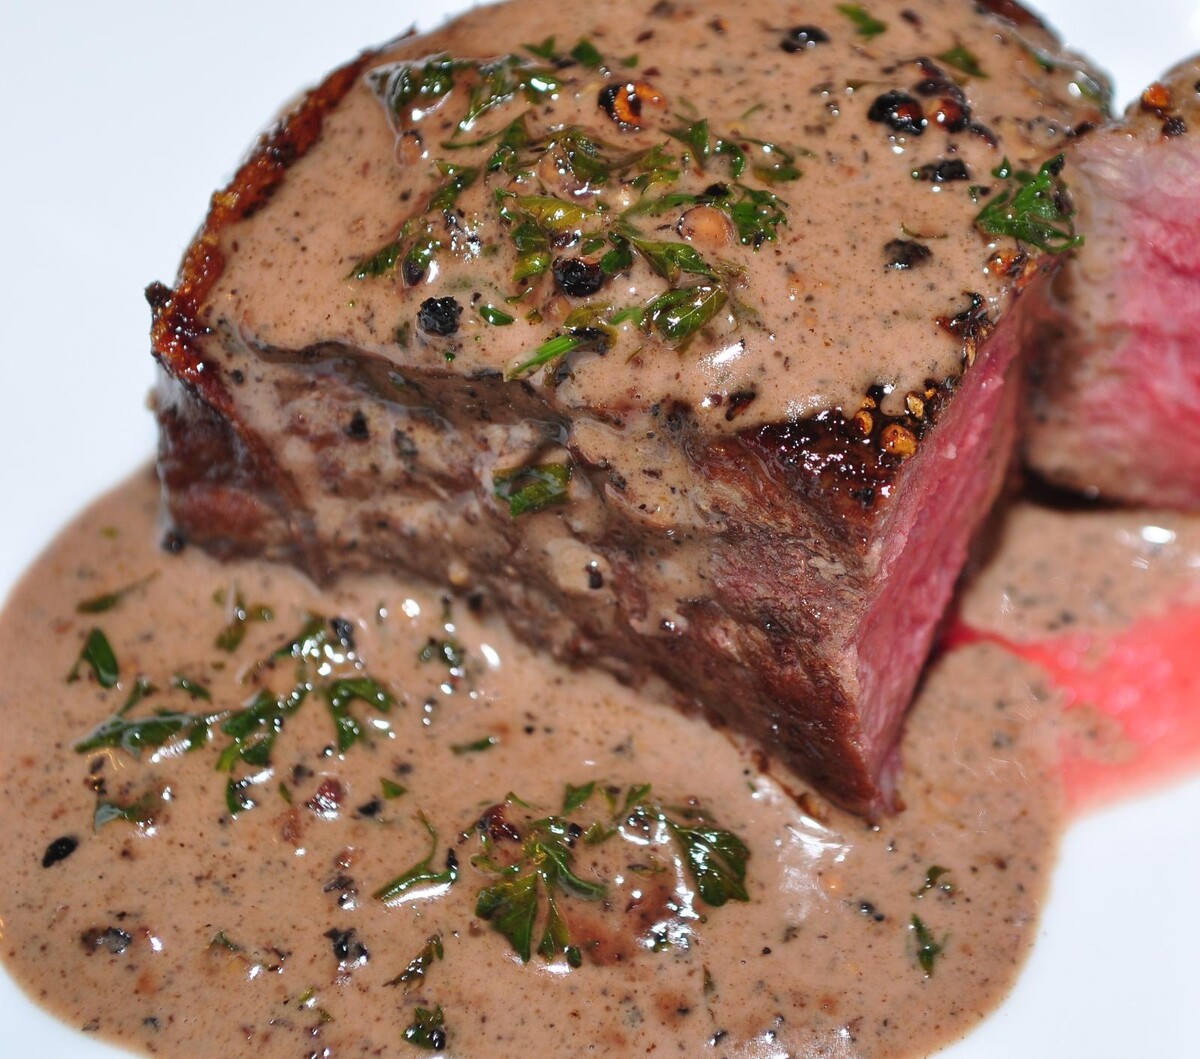 10. místo: Steak Au Poivre, Francie – Tento pokrm se skládá ze steaku (většinou filet mignon) a pepřové omáčky. Ta se tradičně dělá ve stejné pánvi, ve které se připravovalo maso. 